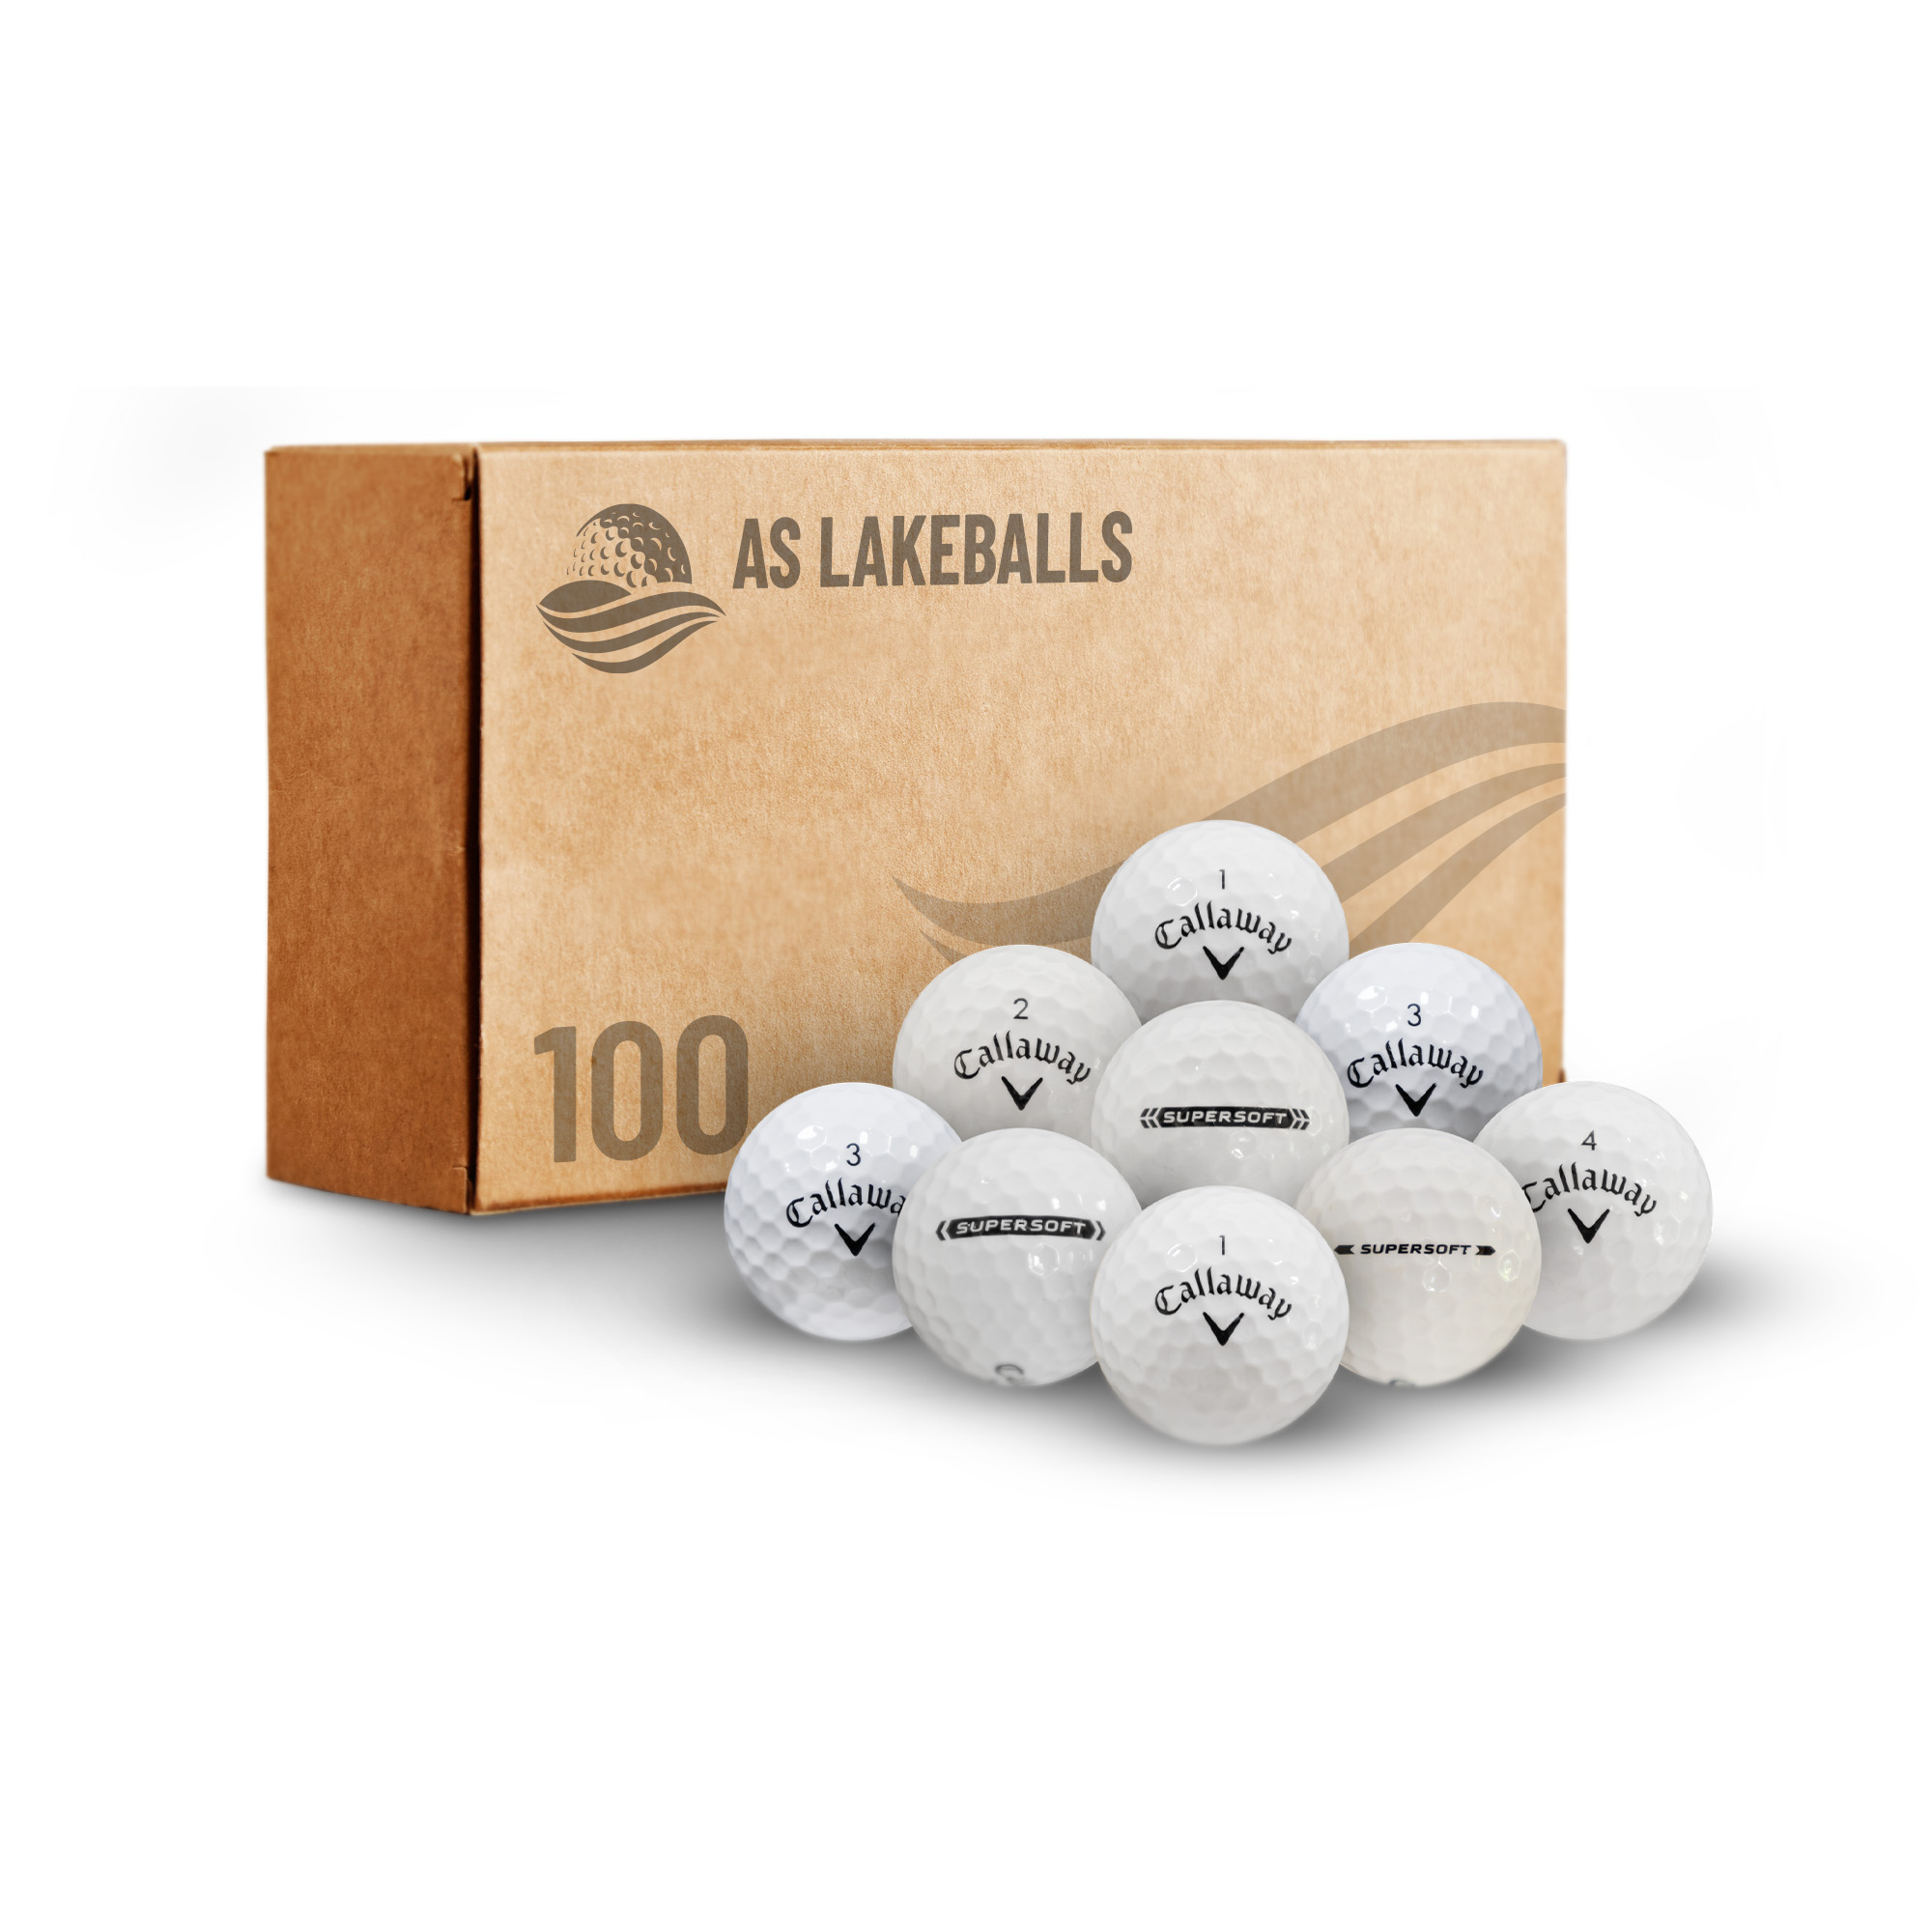 100 Stück Callaway Supersoft AAA-AA Lakeballs